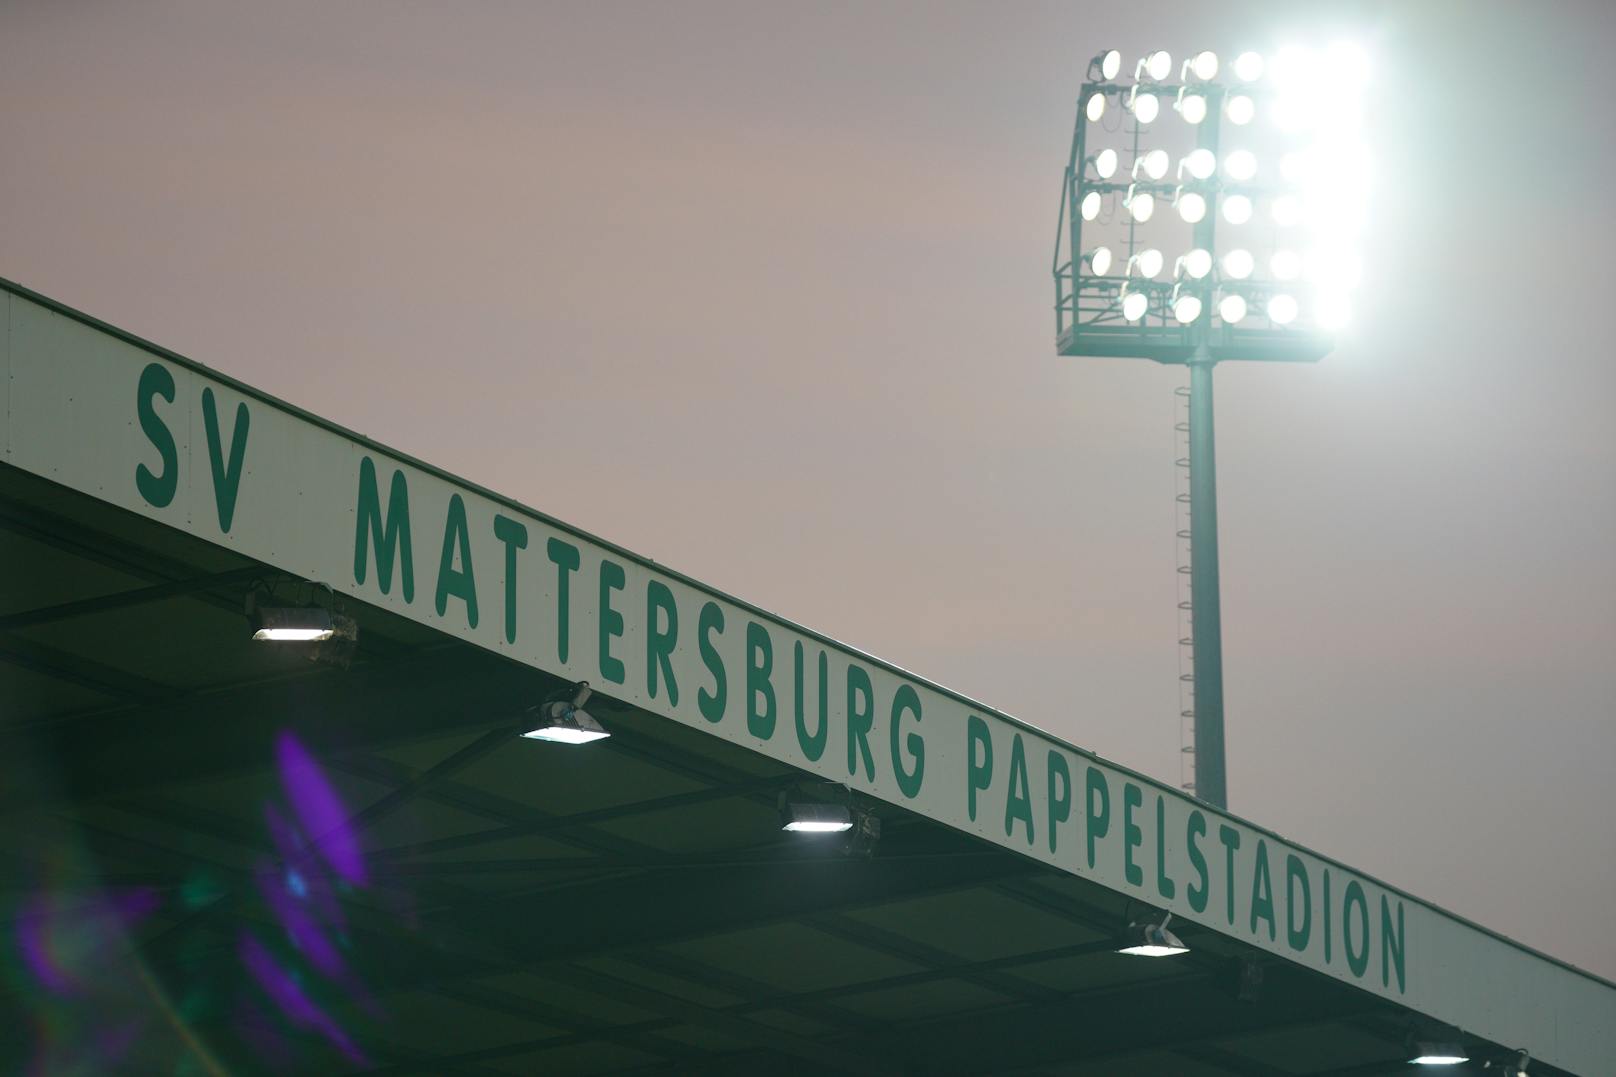 Heute entscheidet sich die Zukunft des SV Mattersburg